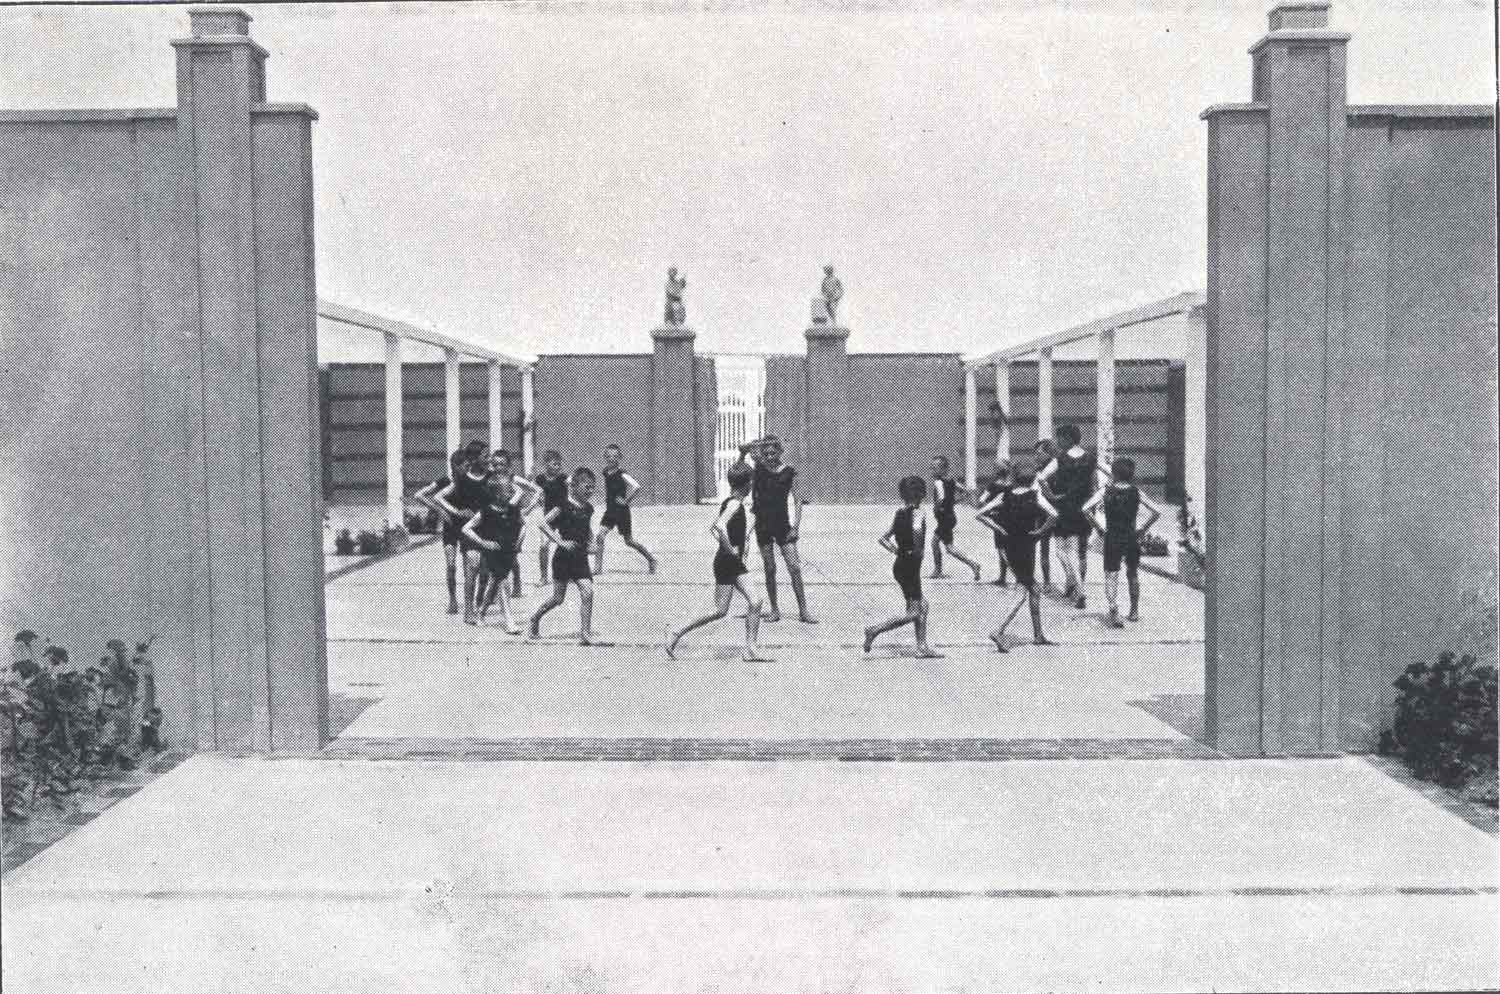 Foto, schwarz-weiß, außen: Eine Gruppe von Menschen in schwarzen Turnanzügen läuft in einem von Mauern eingefassten Areal im Kreis